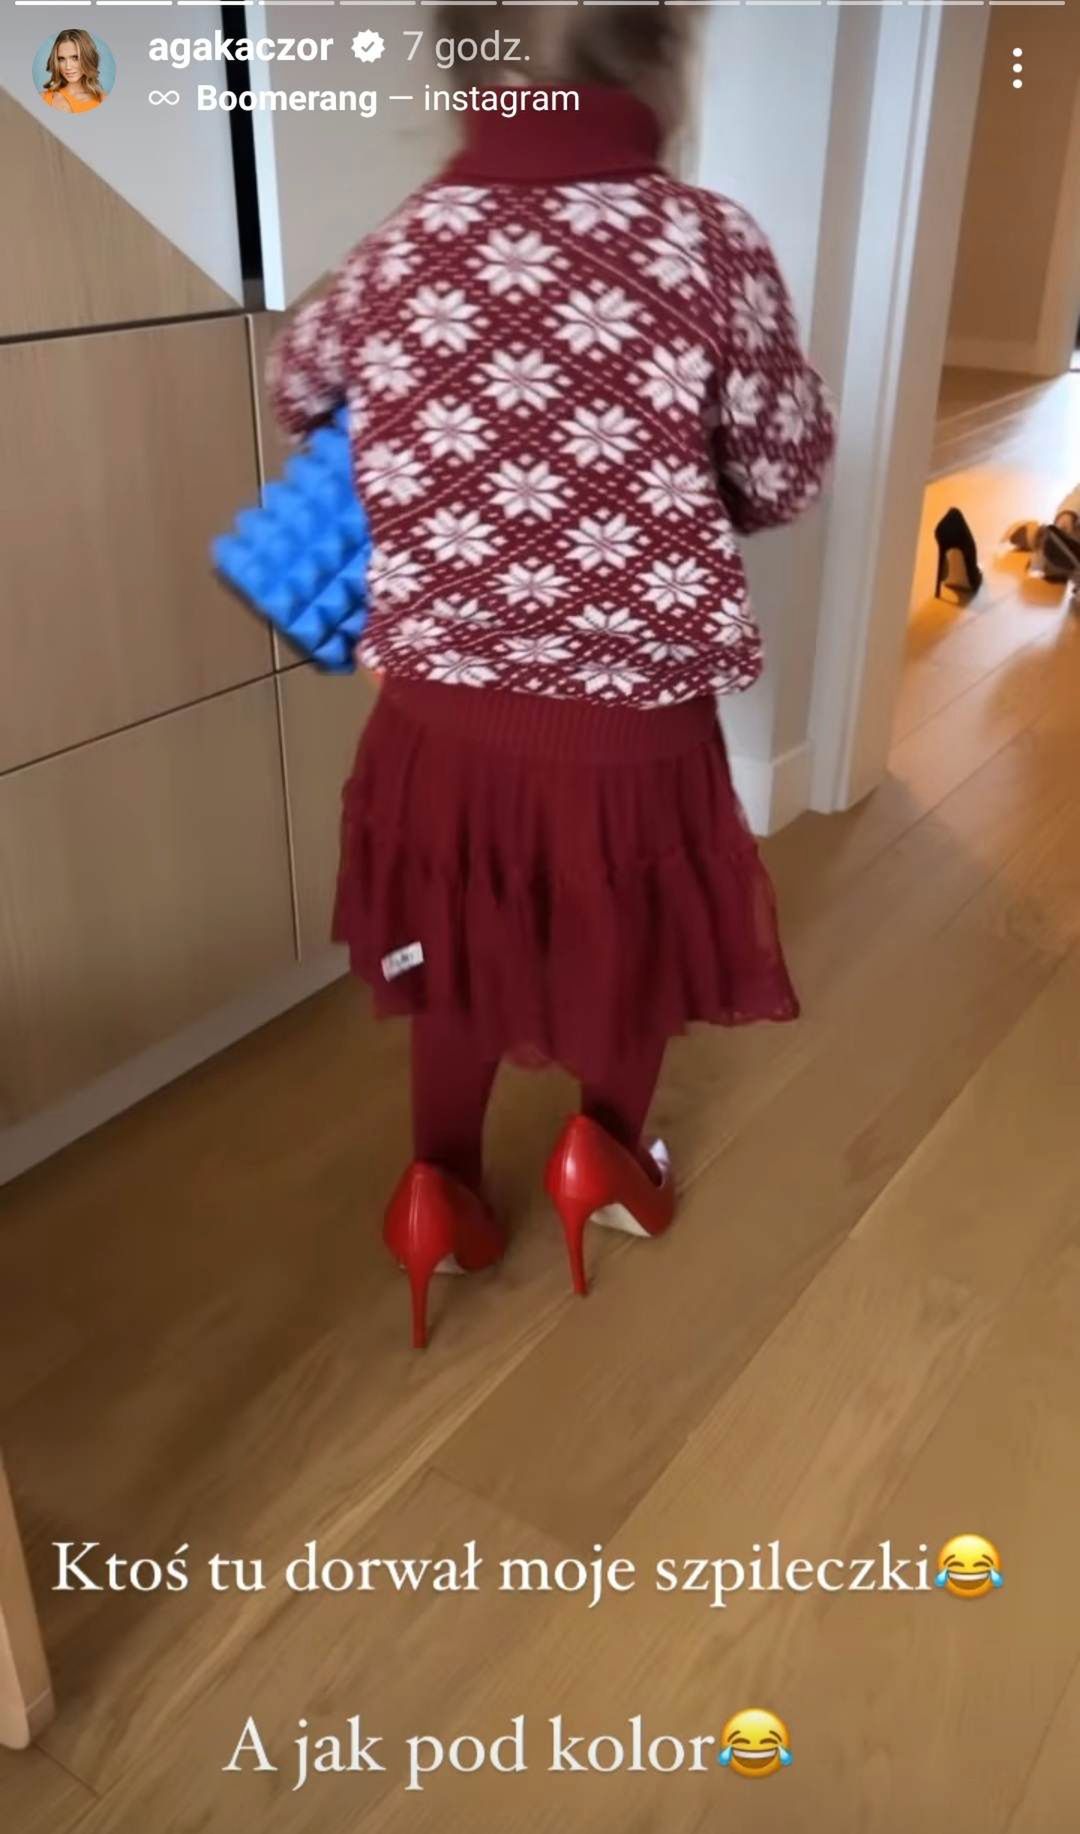 Agnieszka Kaczorowska pokazała córkę w butach na obcasie